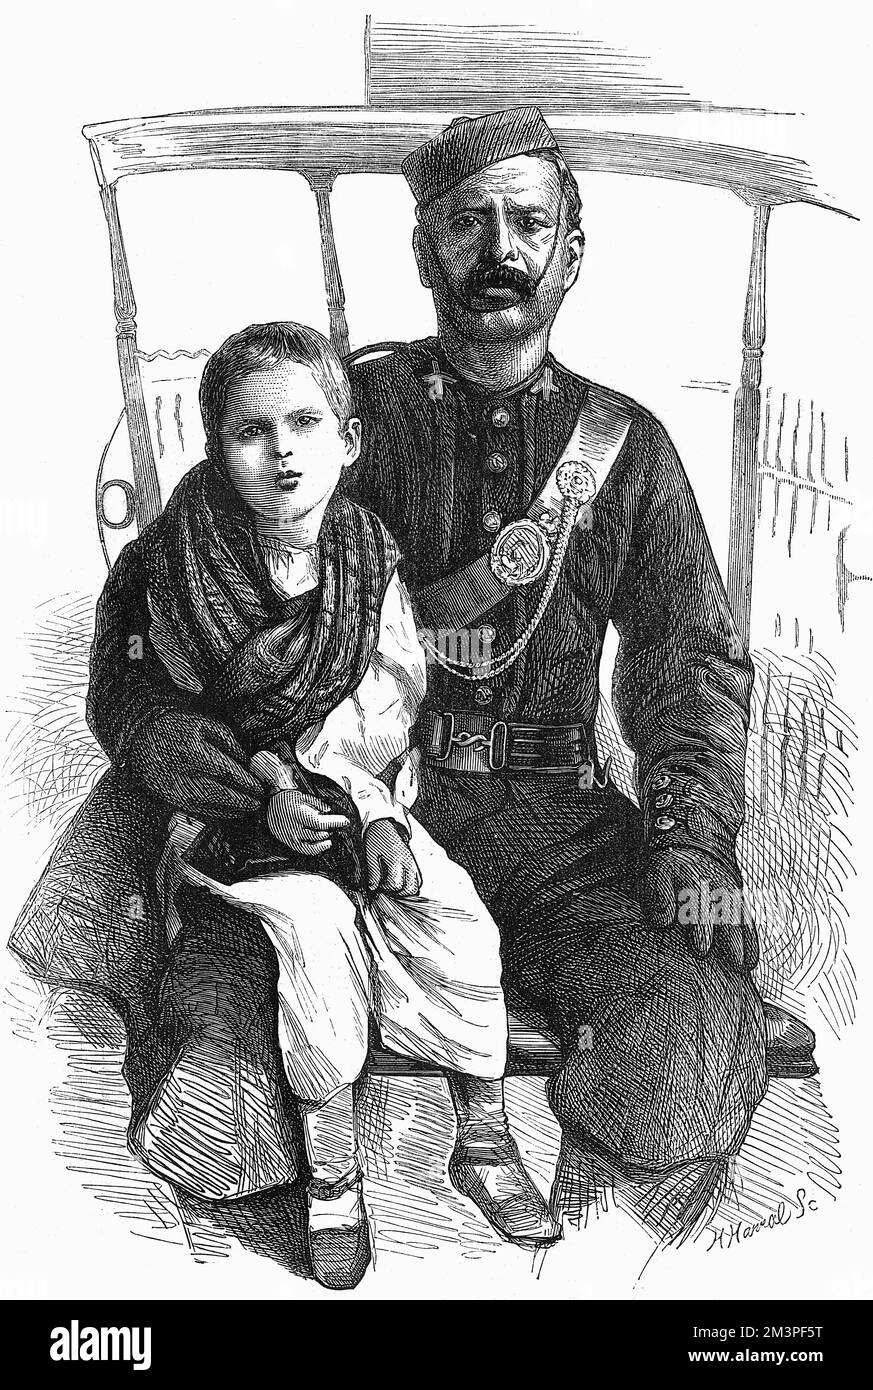 Mary Winchester, abgebildet nach ihrer Entlassung aus der Gefangenschaft, mit Scubedar, einem Offizier, der sich nach ihrer Entlassung um sie kümmerte. Mary (1865 - 1955) wurde 1871 gefangen genommen und von den Mizos in Mizoram im Nordosten Indiens (damals Lushai Hills genannt) als Geisel gehalten. Ihr Vater wurde bei der Razzia, bei der sie gefangen genommen wurde, im Januar 1871 getötet. Im Januar 1872 wurde sie in Gefangenschaft im Allgemeinen gut versorgt und kehrte zu ihren Großeltern in Schottland zurück. Datum: 1872 Stockfoto